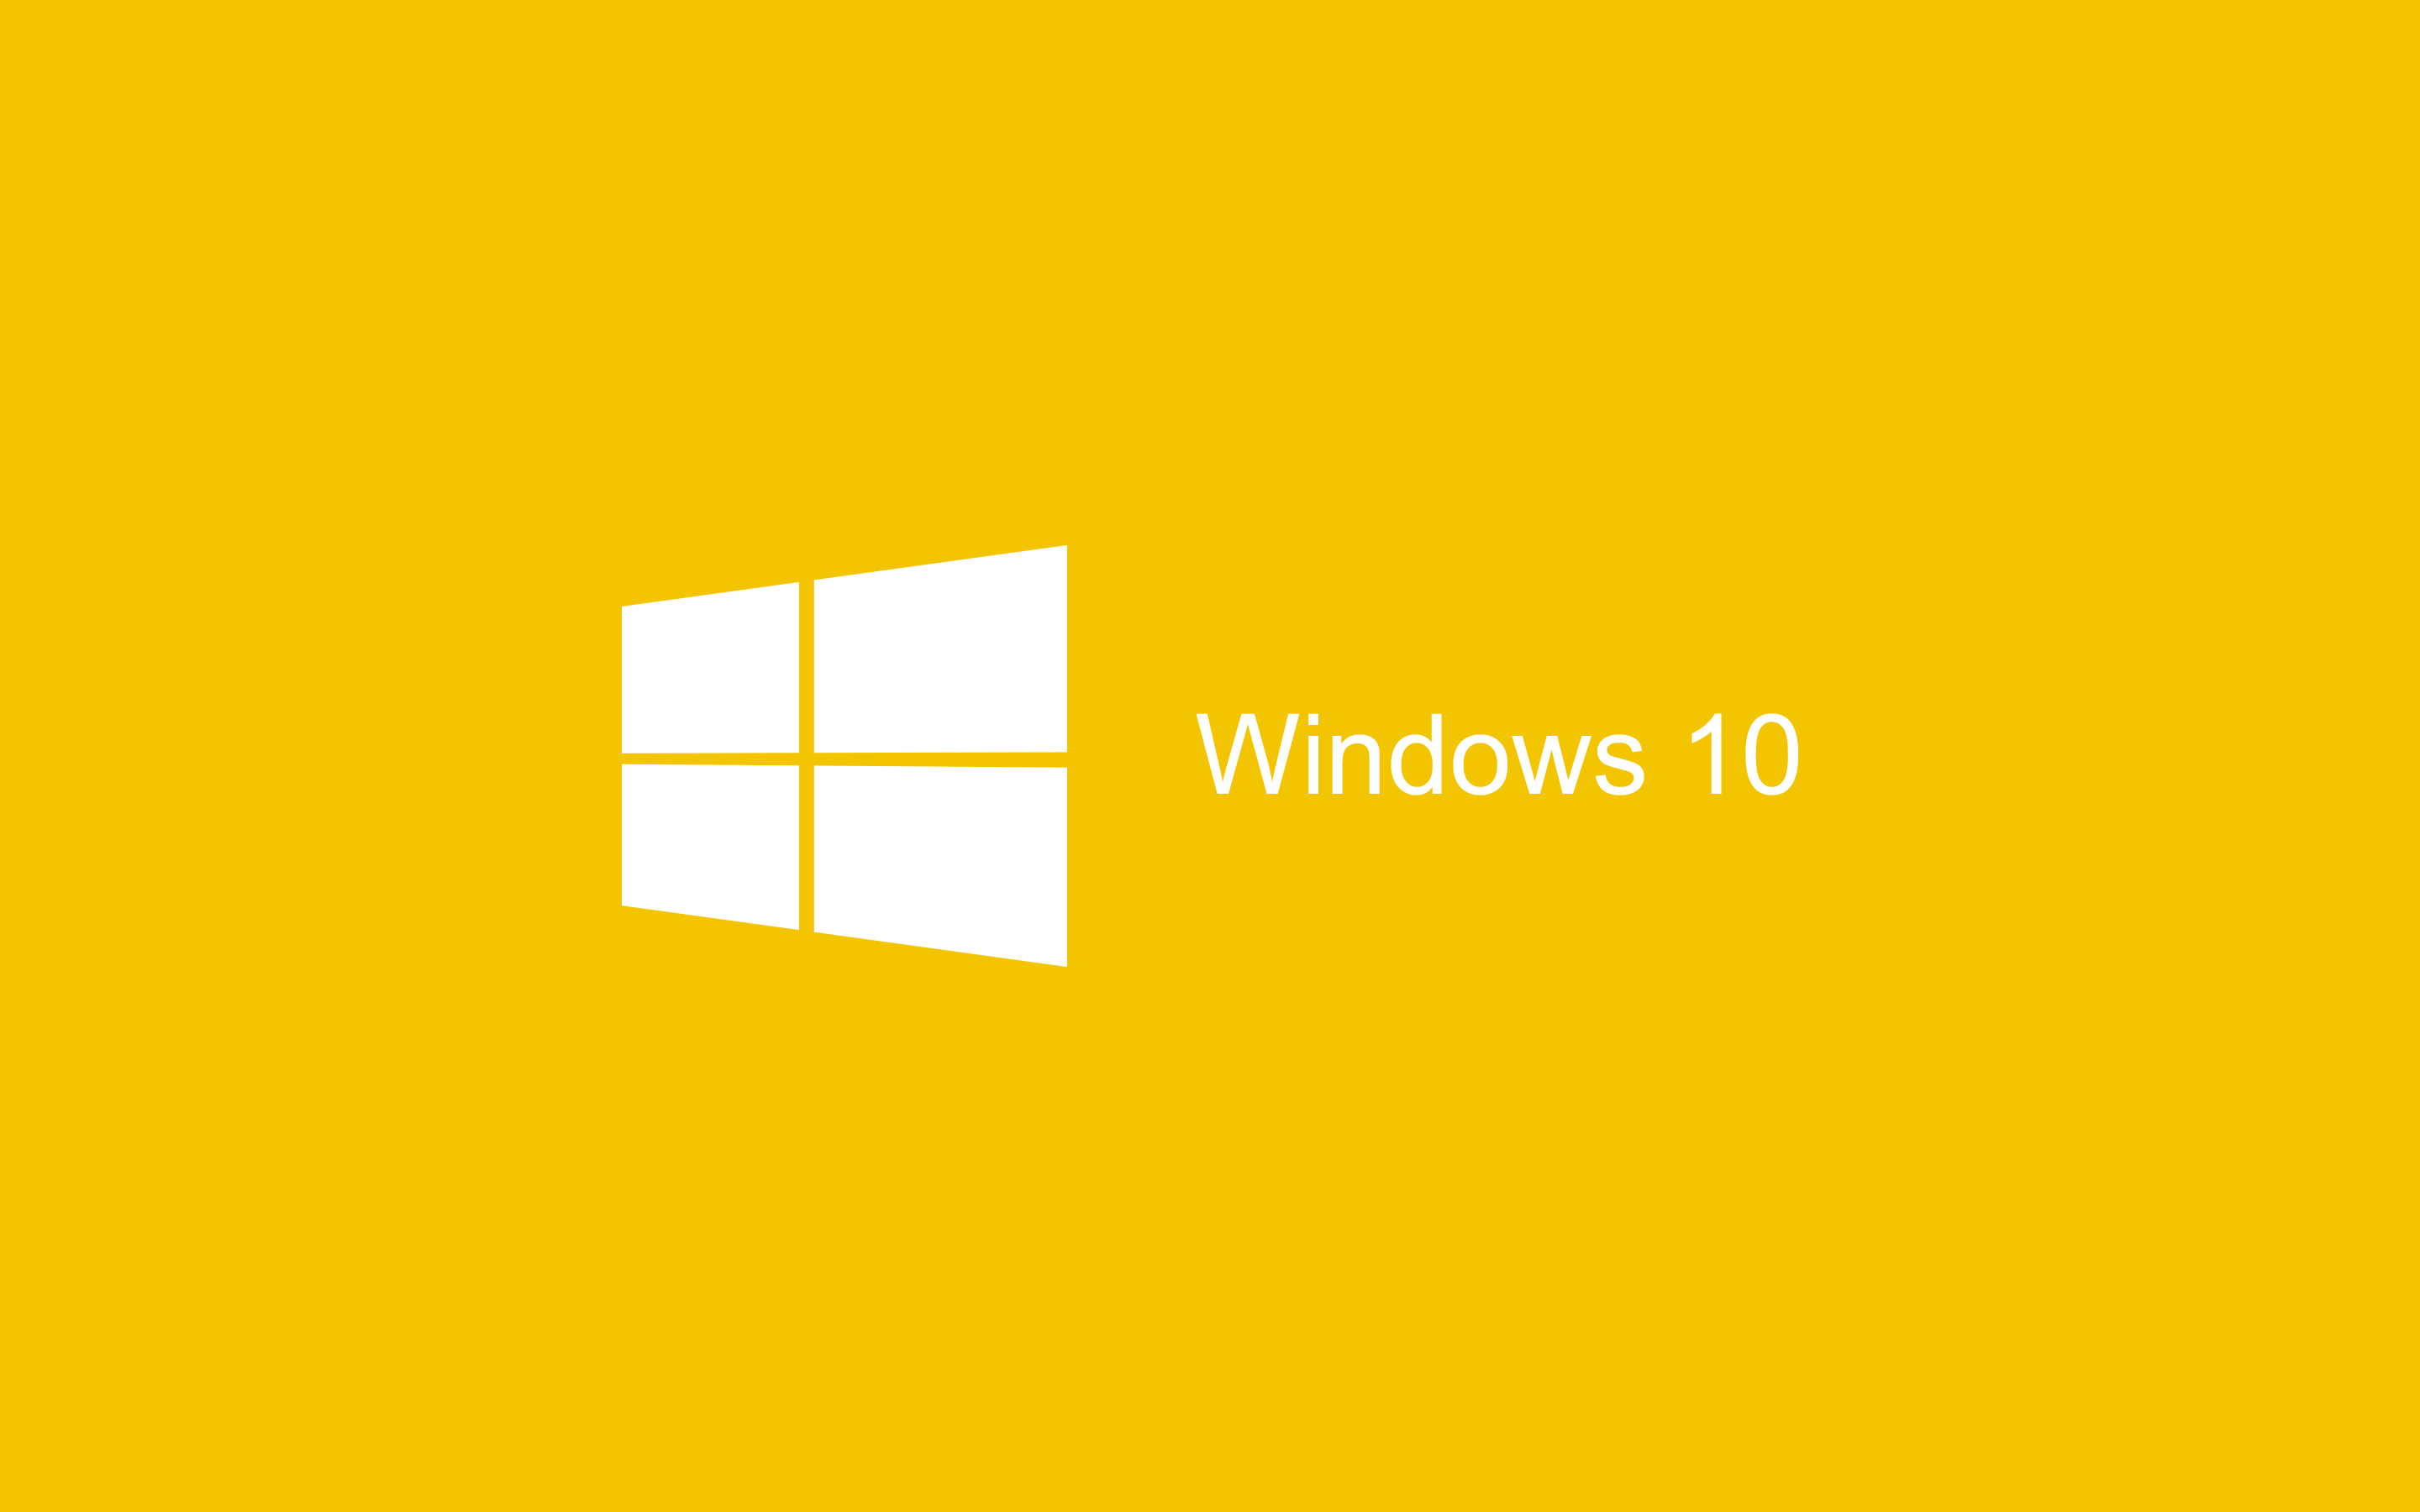 Hãy cập nhật cho chiếc máy tính của bạn với Hình nền Vàng Windows 10 HD 2880x1800 miễn phí để trải nghiệm trọn vẹn sự hoàn hảo của hệ điều hành mới nhất. Với độ phân giải tuyệt đỉnh, hình nền sẽ mang đến cho bạn sự chân thật và sống động hơn bao giờ hết.